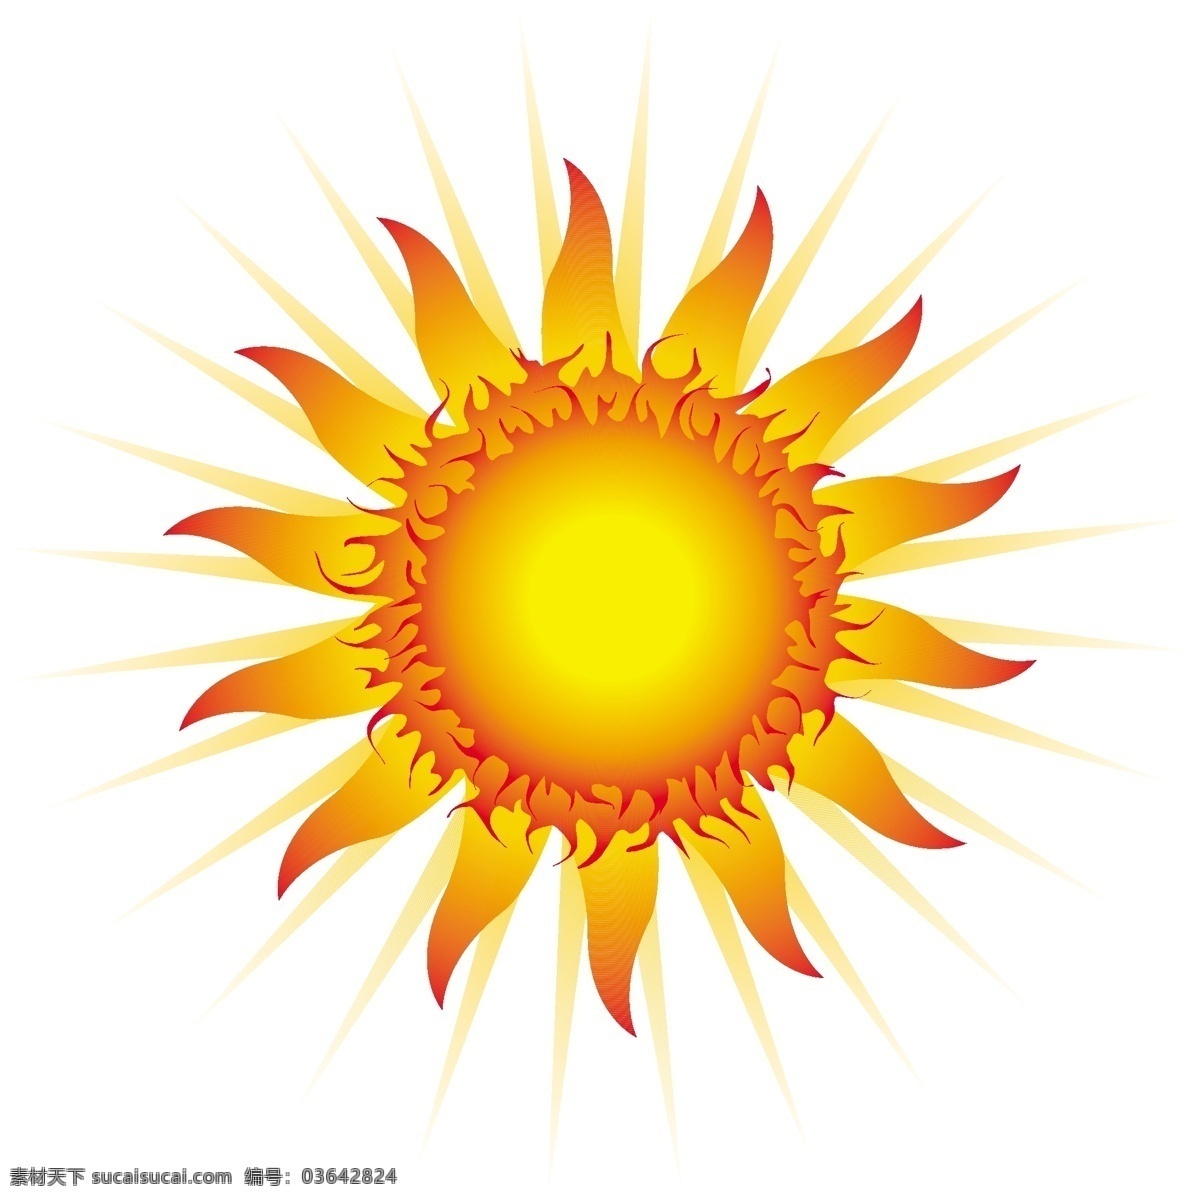 矢量 可爱 太阳 图形设计 光芒 火焰 卡通 矢量素材 图标